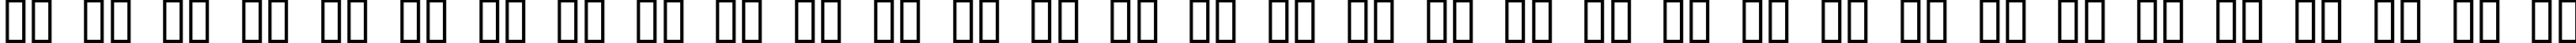 Пример написания русского алфавита шрифтом FontCo Fences